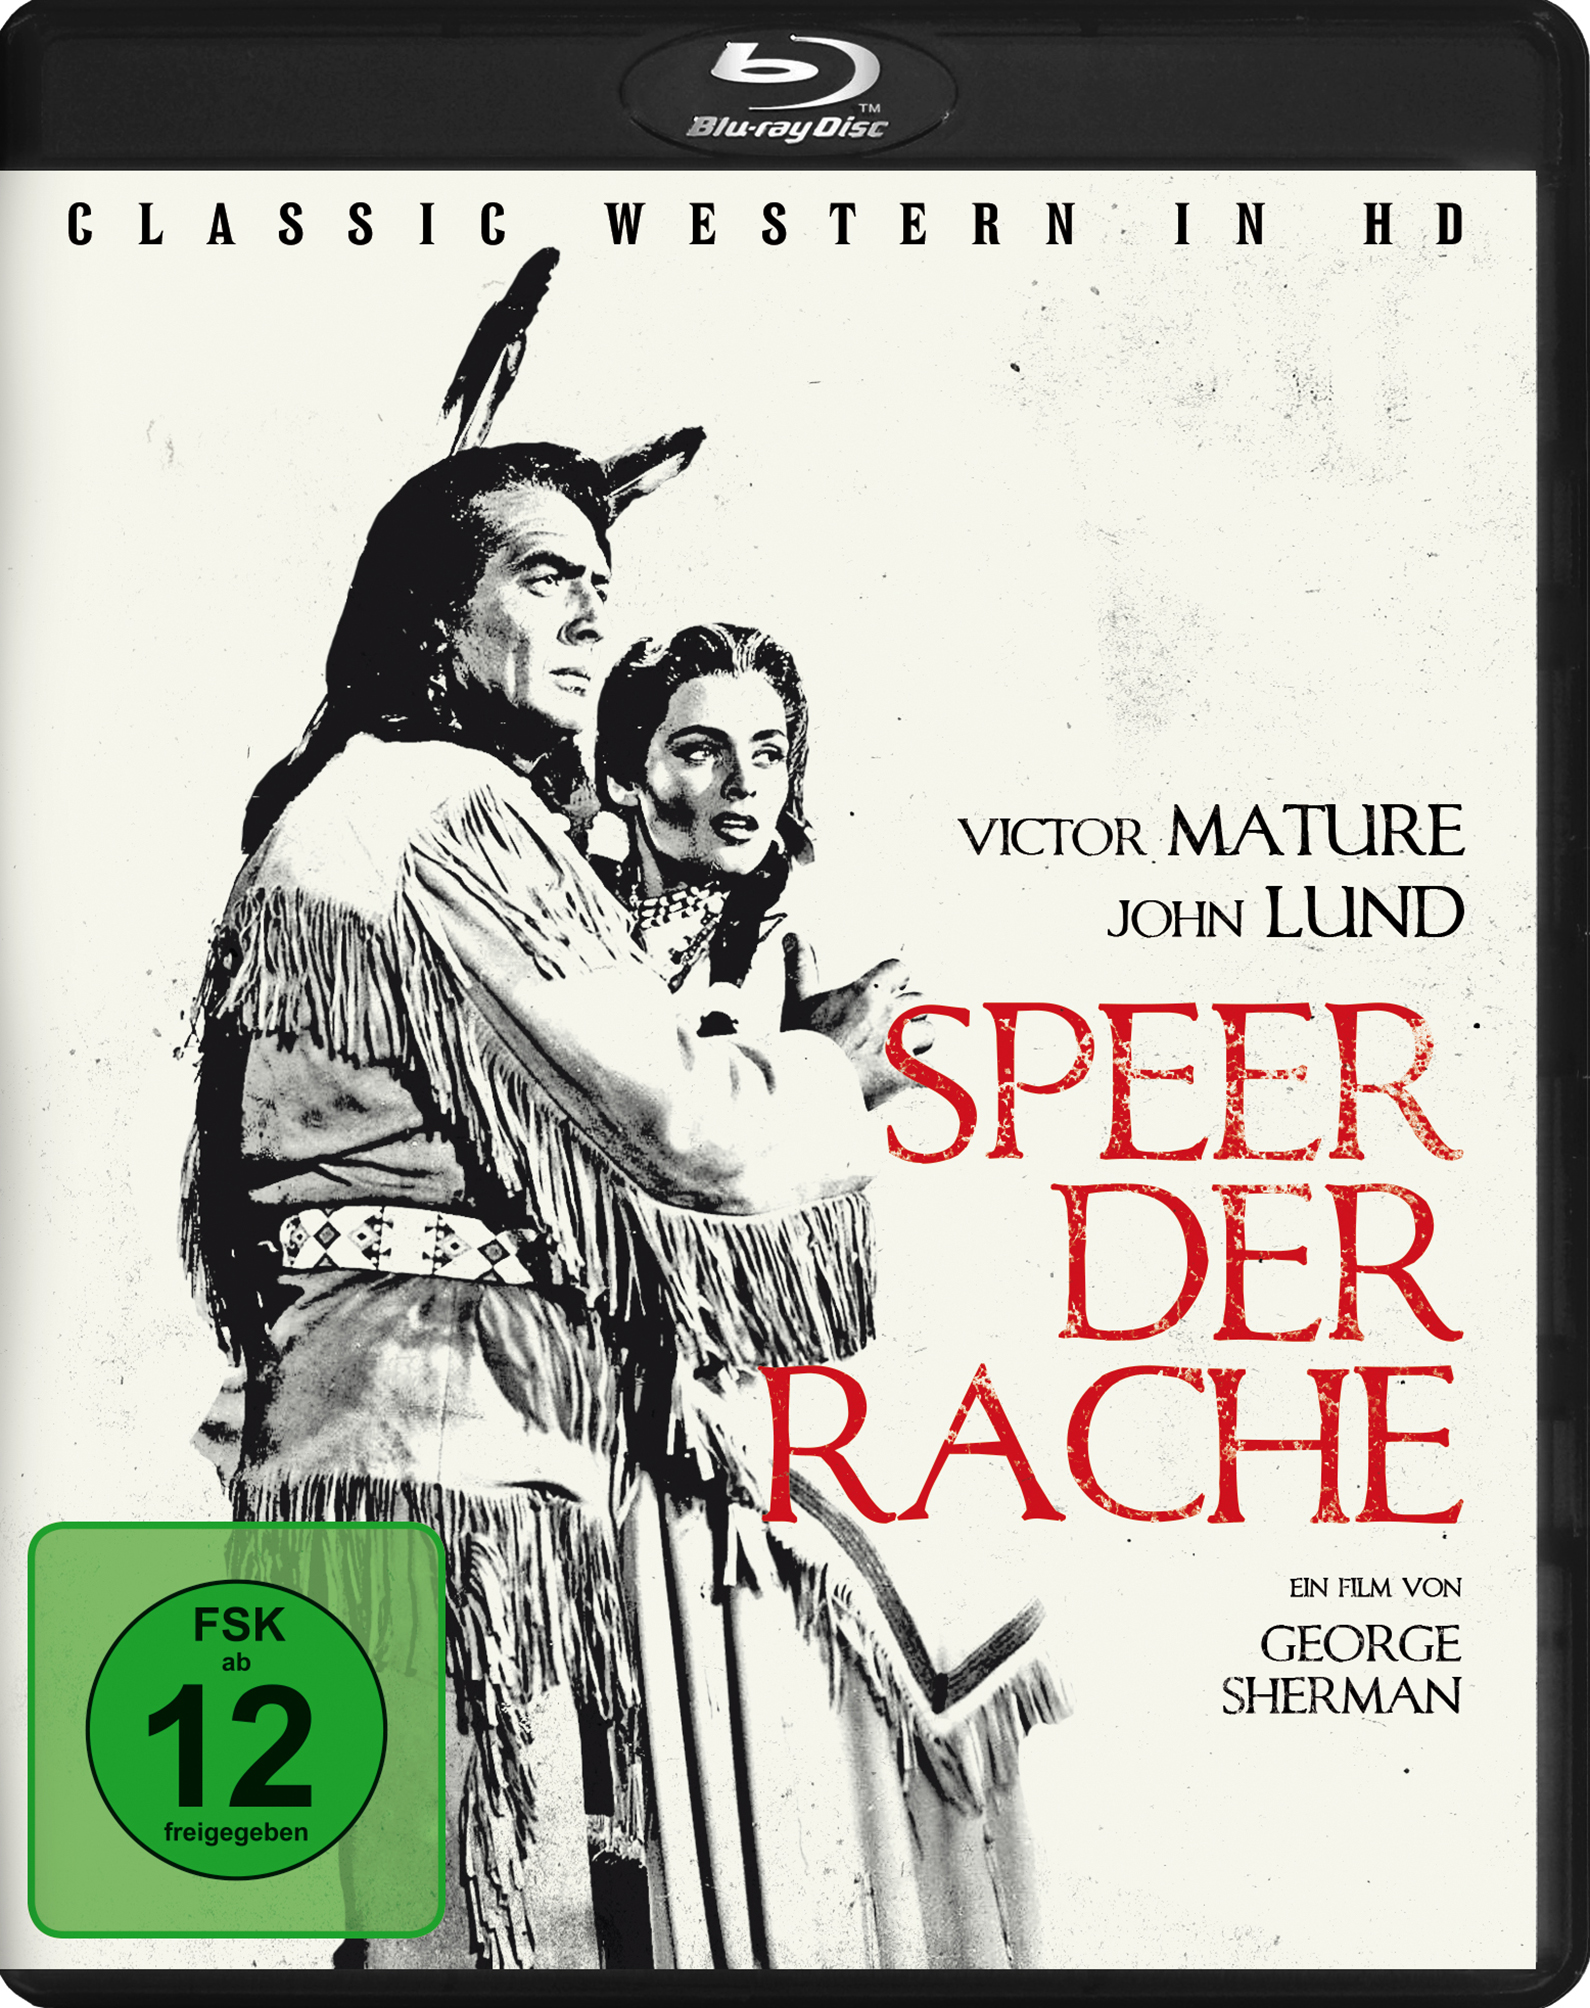 in Blu-ray HD) Rache Speer Der der Western (Classic